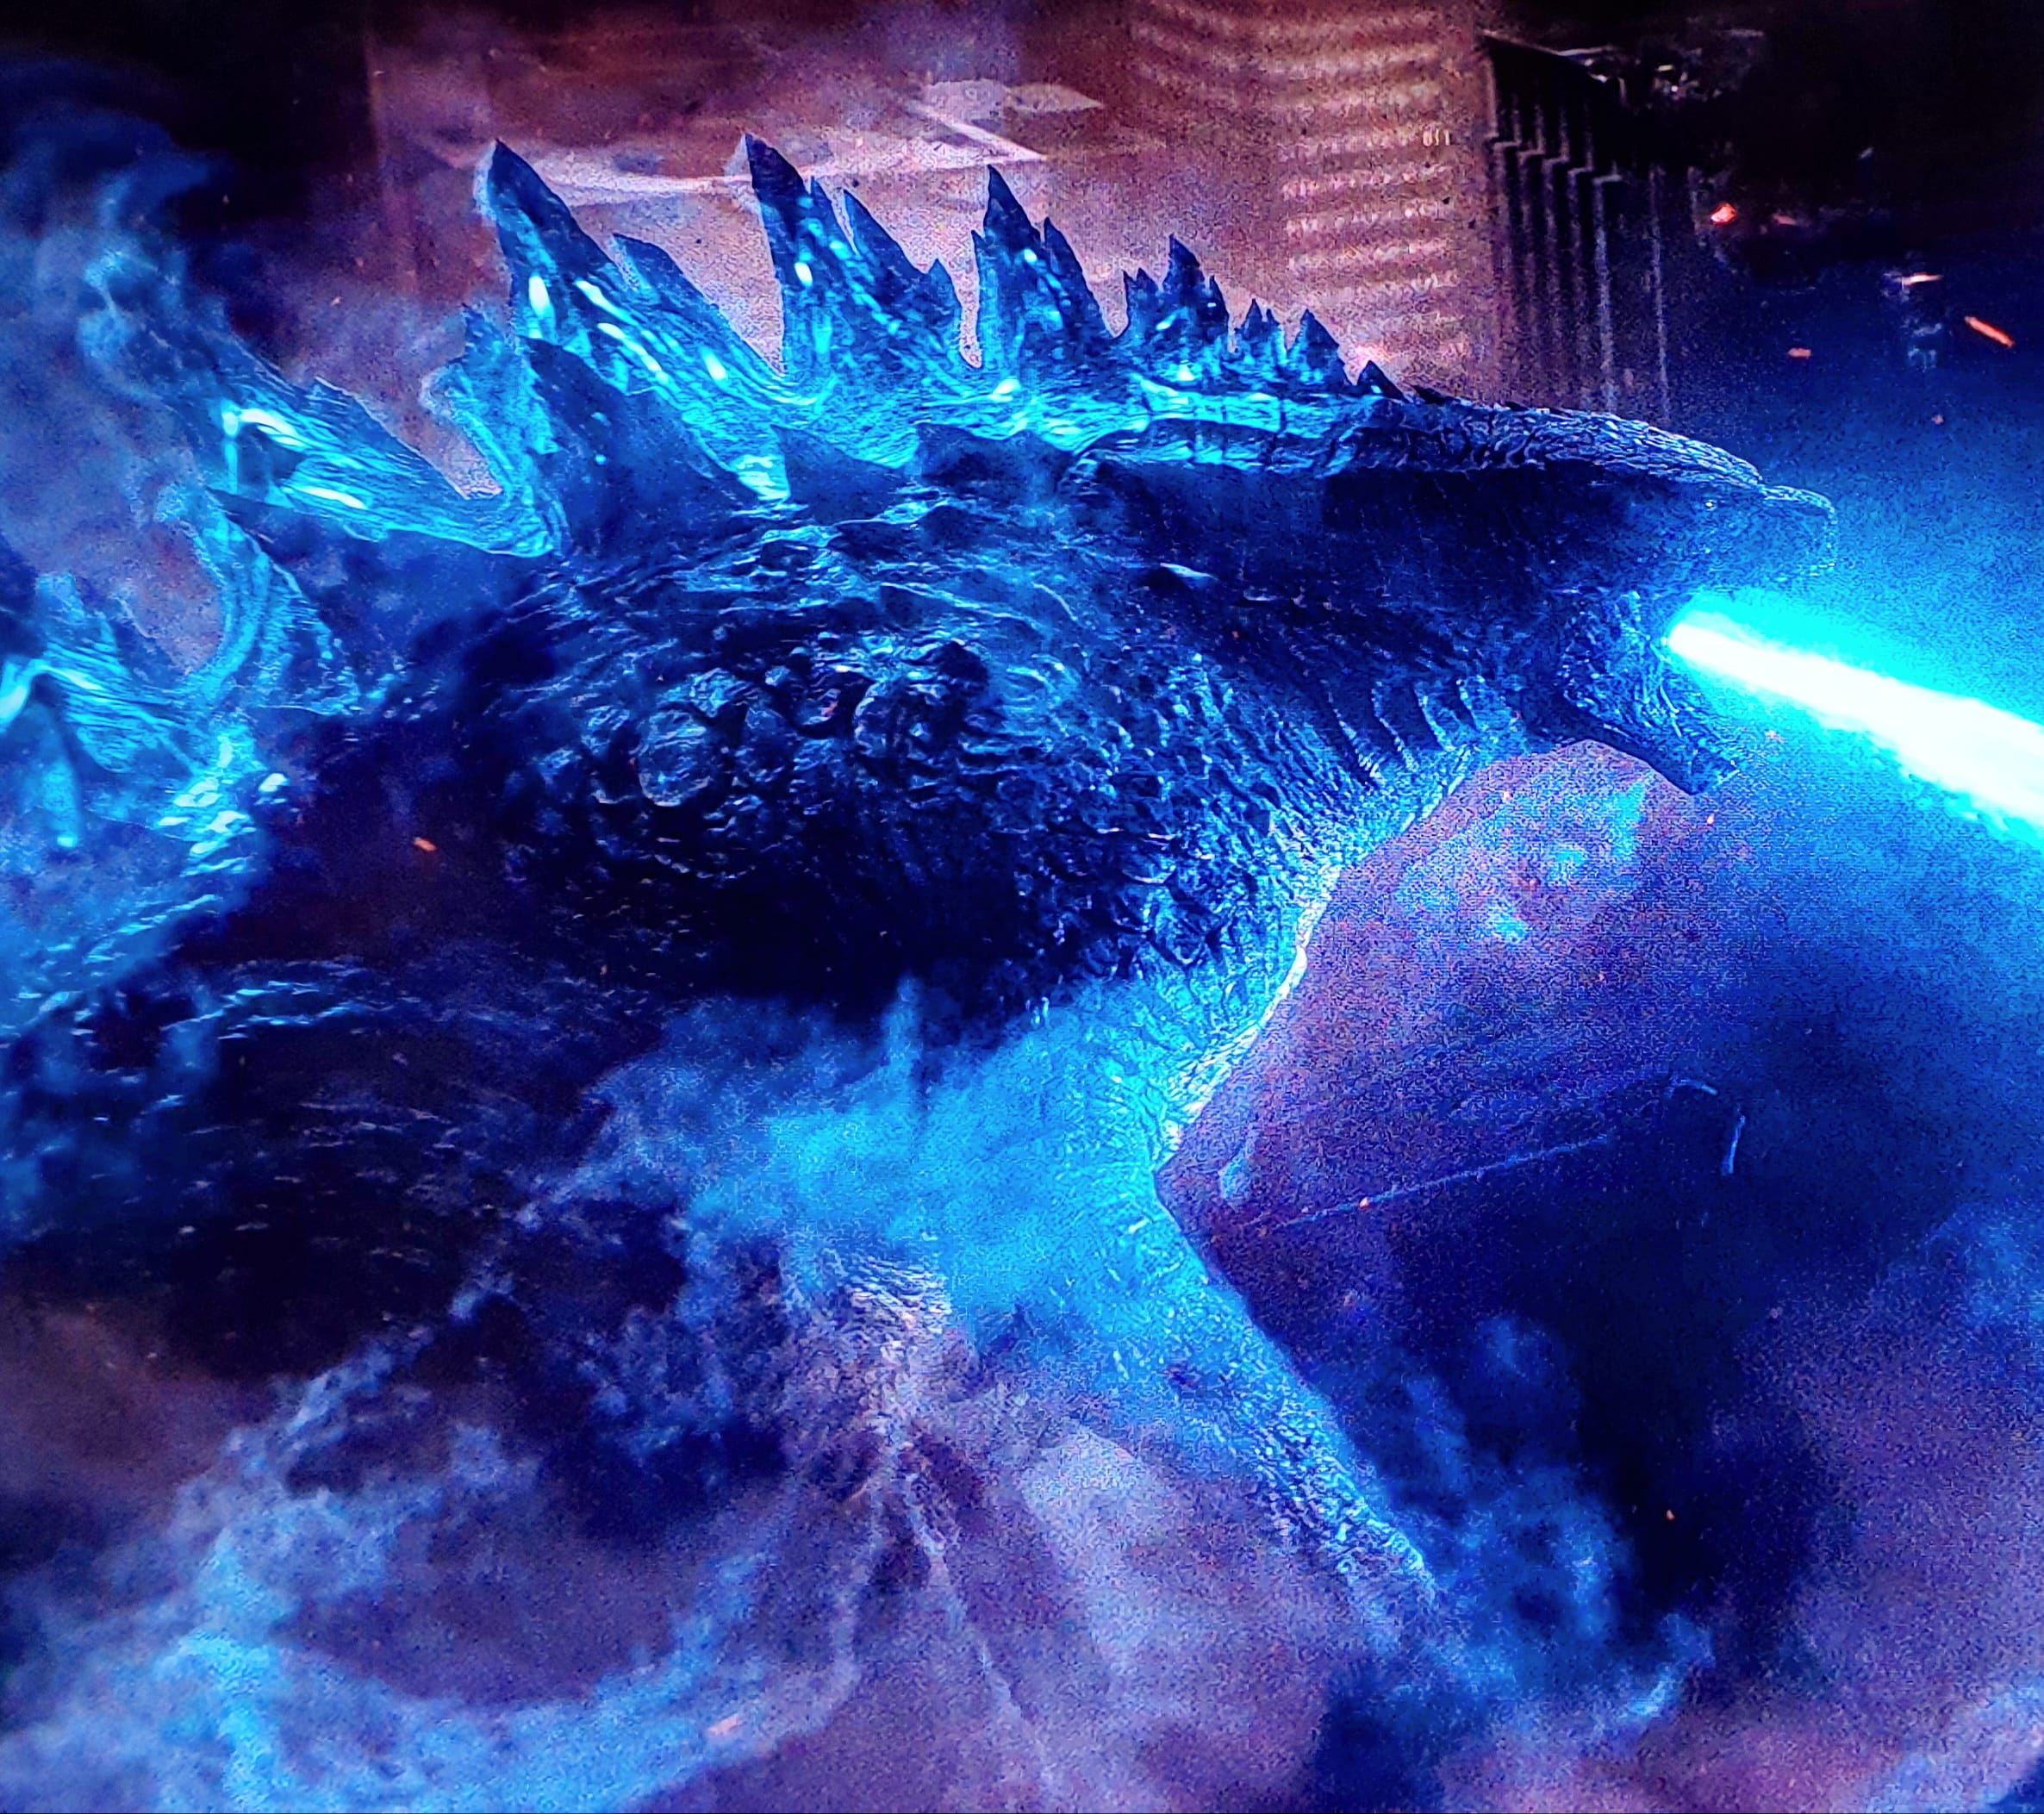 Godzilla (2014) images